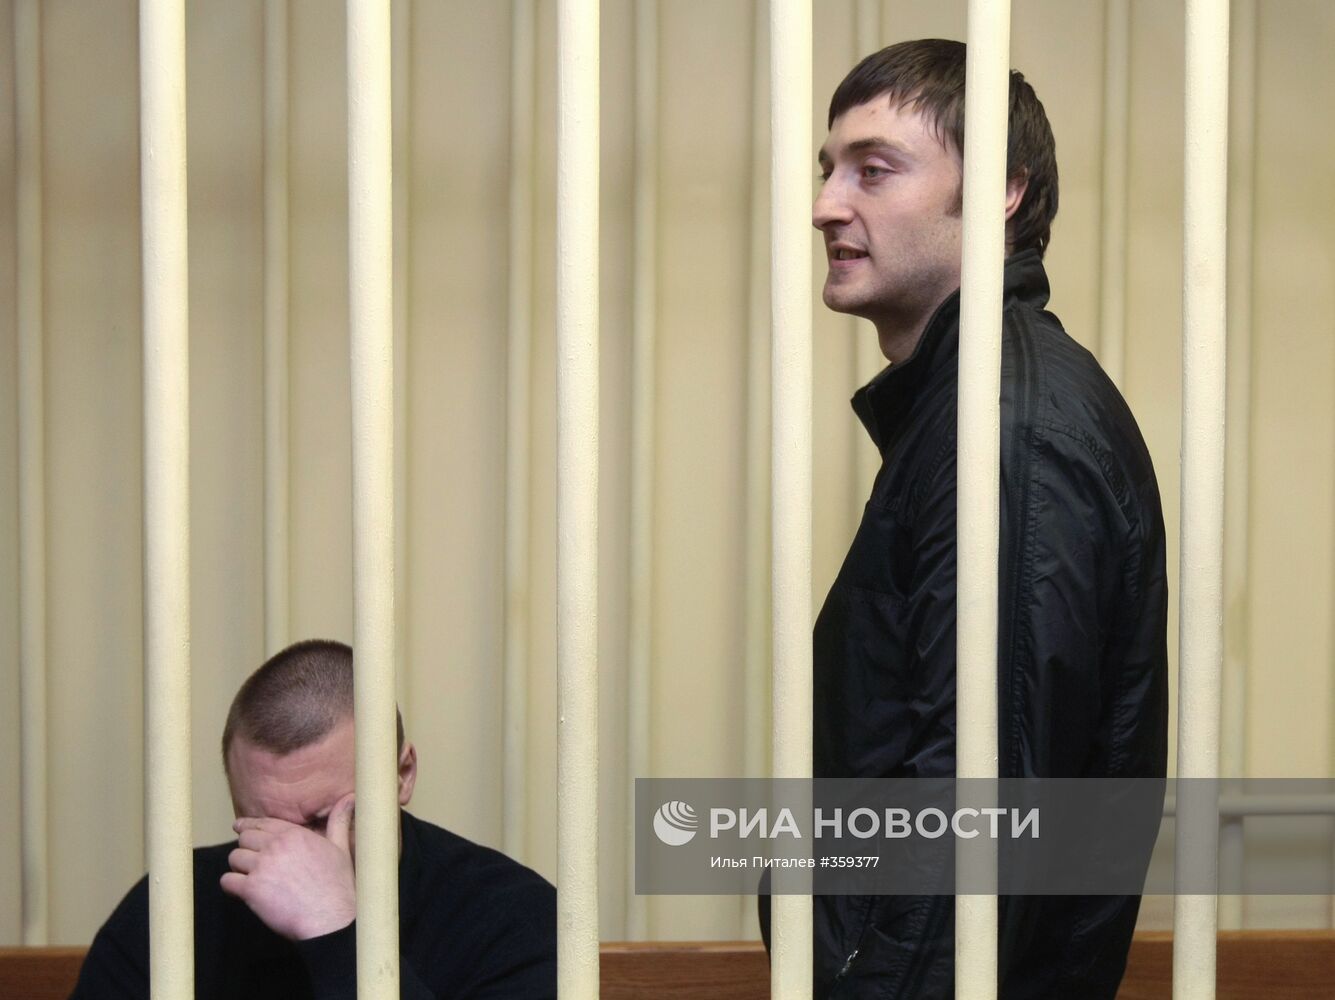 Процесс по делу об убийстве А. Политковской будет закрытым